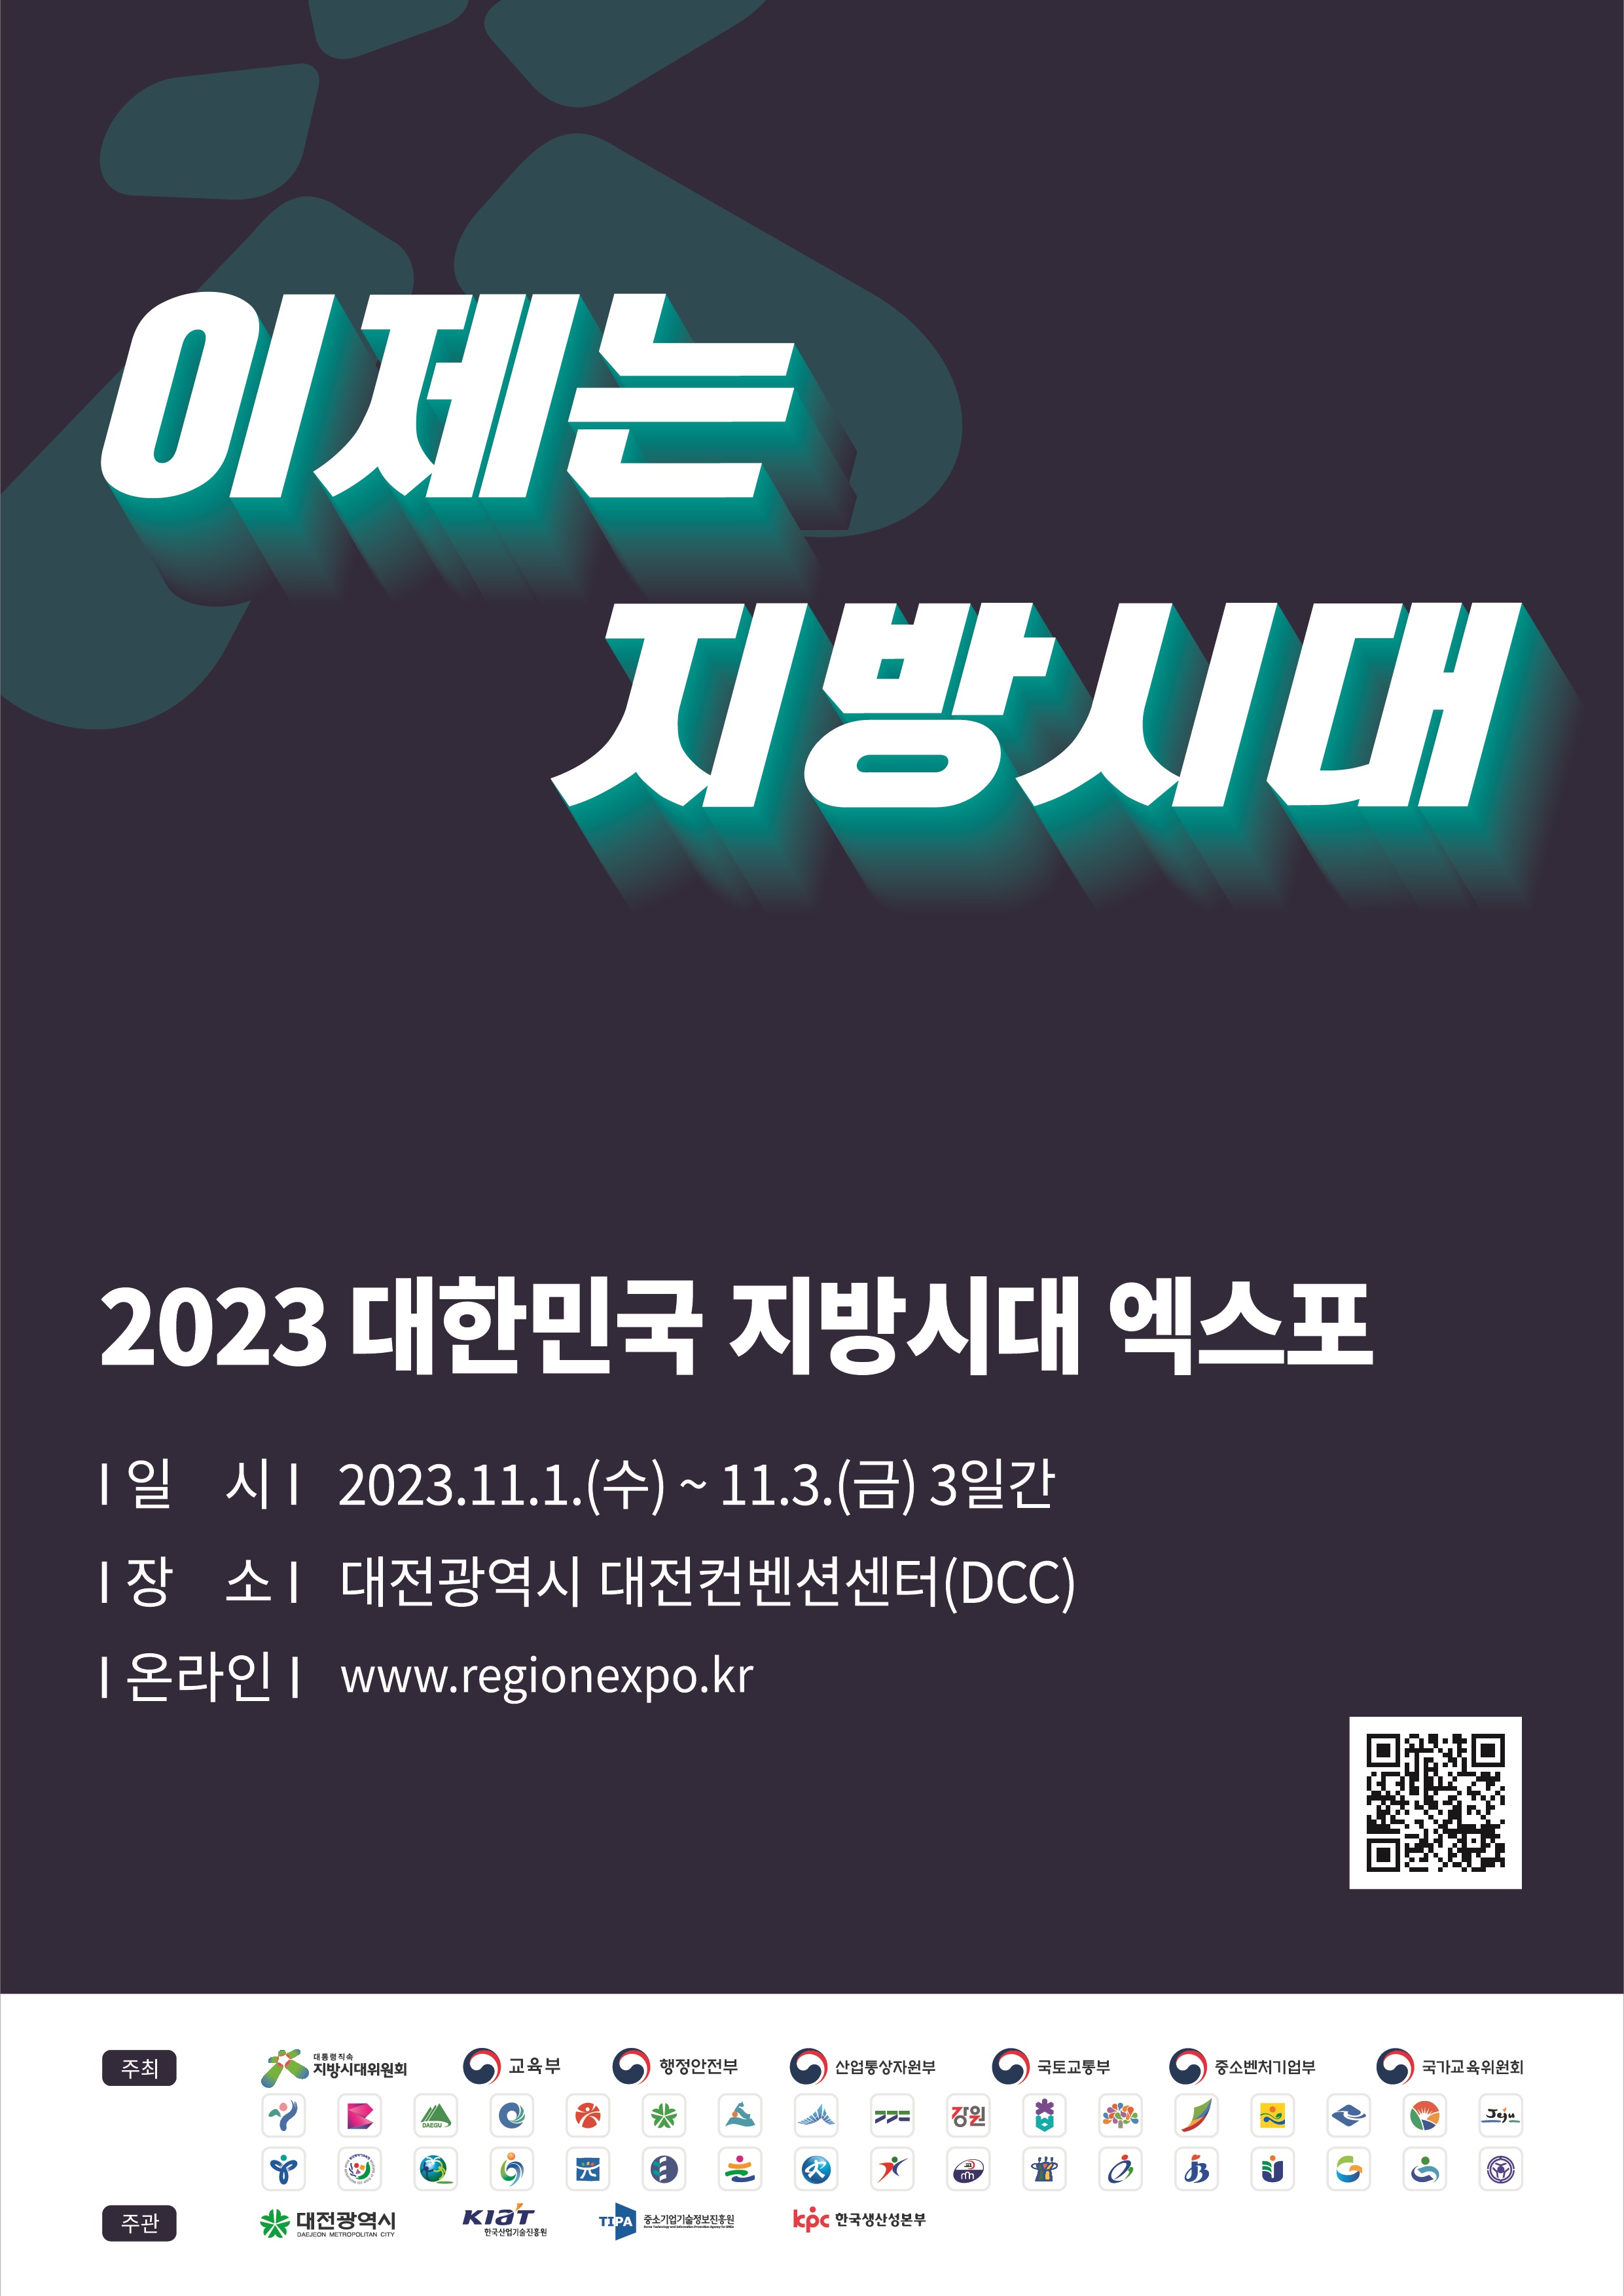 2023 대한민국 지방시대 엑스포 개최 안내의 1번째 이미지